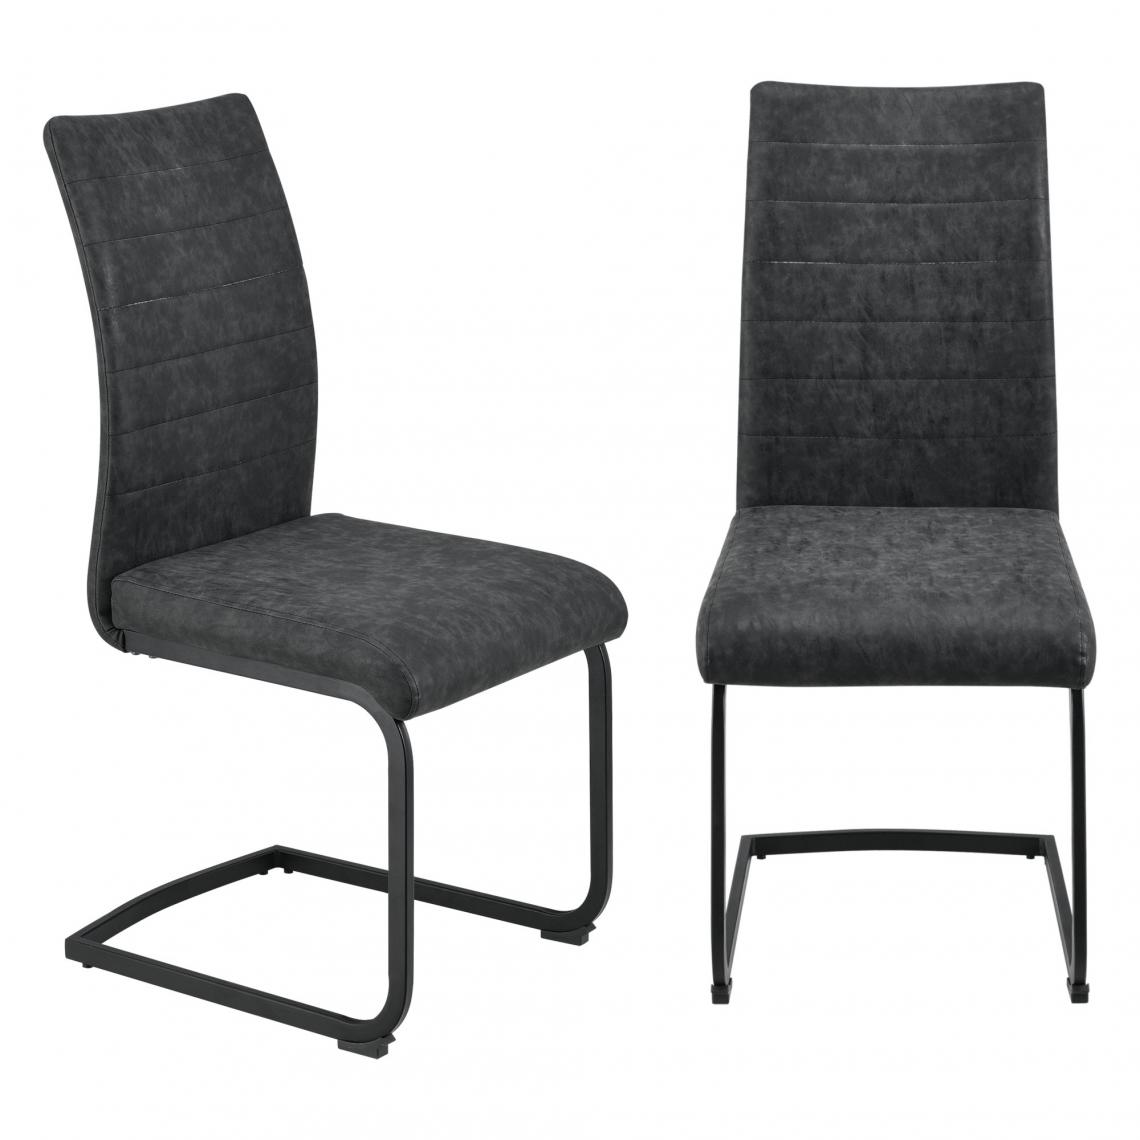 Helloshop26 - Lot de 2 chaises salle à manger sièges pieds robustes rembourrage imitation de daim noir 03_0005748 - Chaises